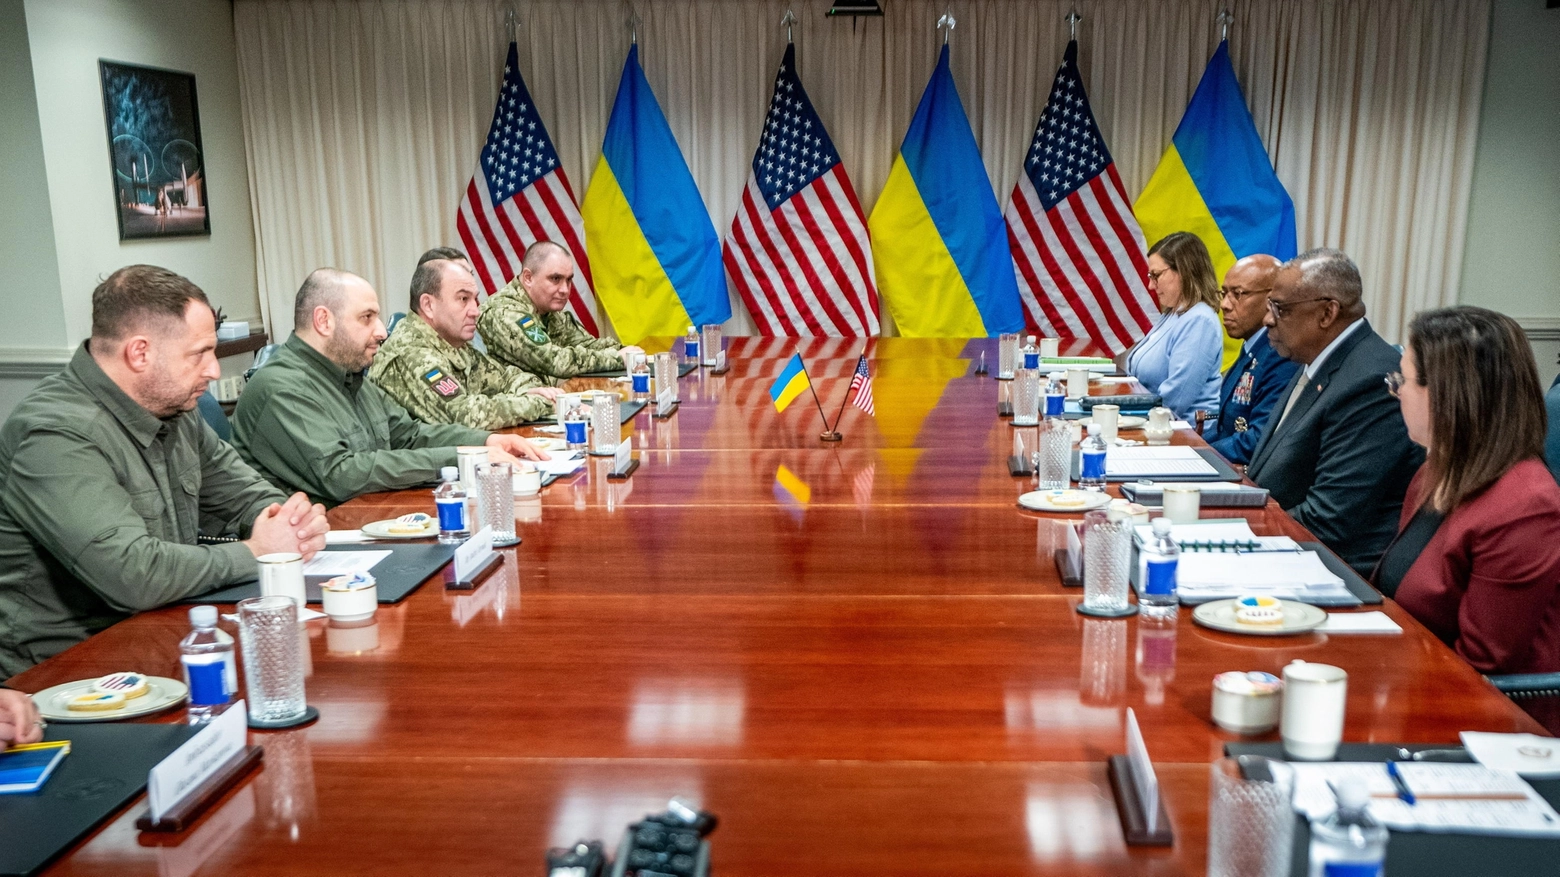 Il segretario della Difesa Usa Lloyd Austin incontra i vertici ucraini (foto Ansa)